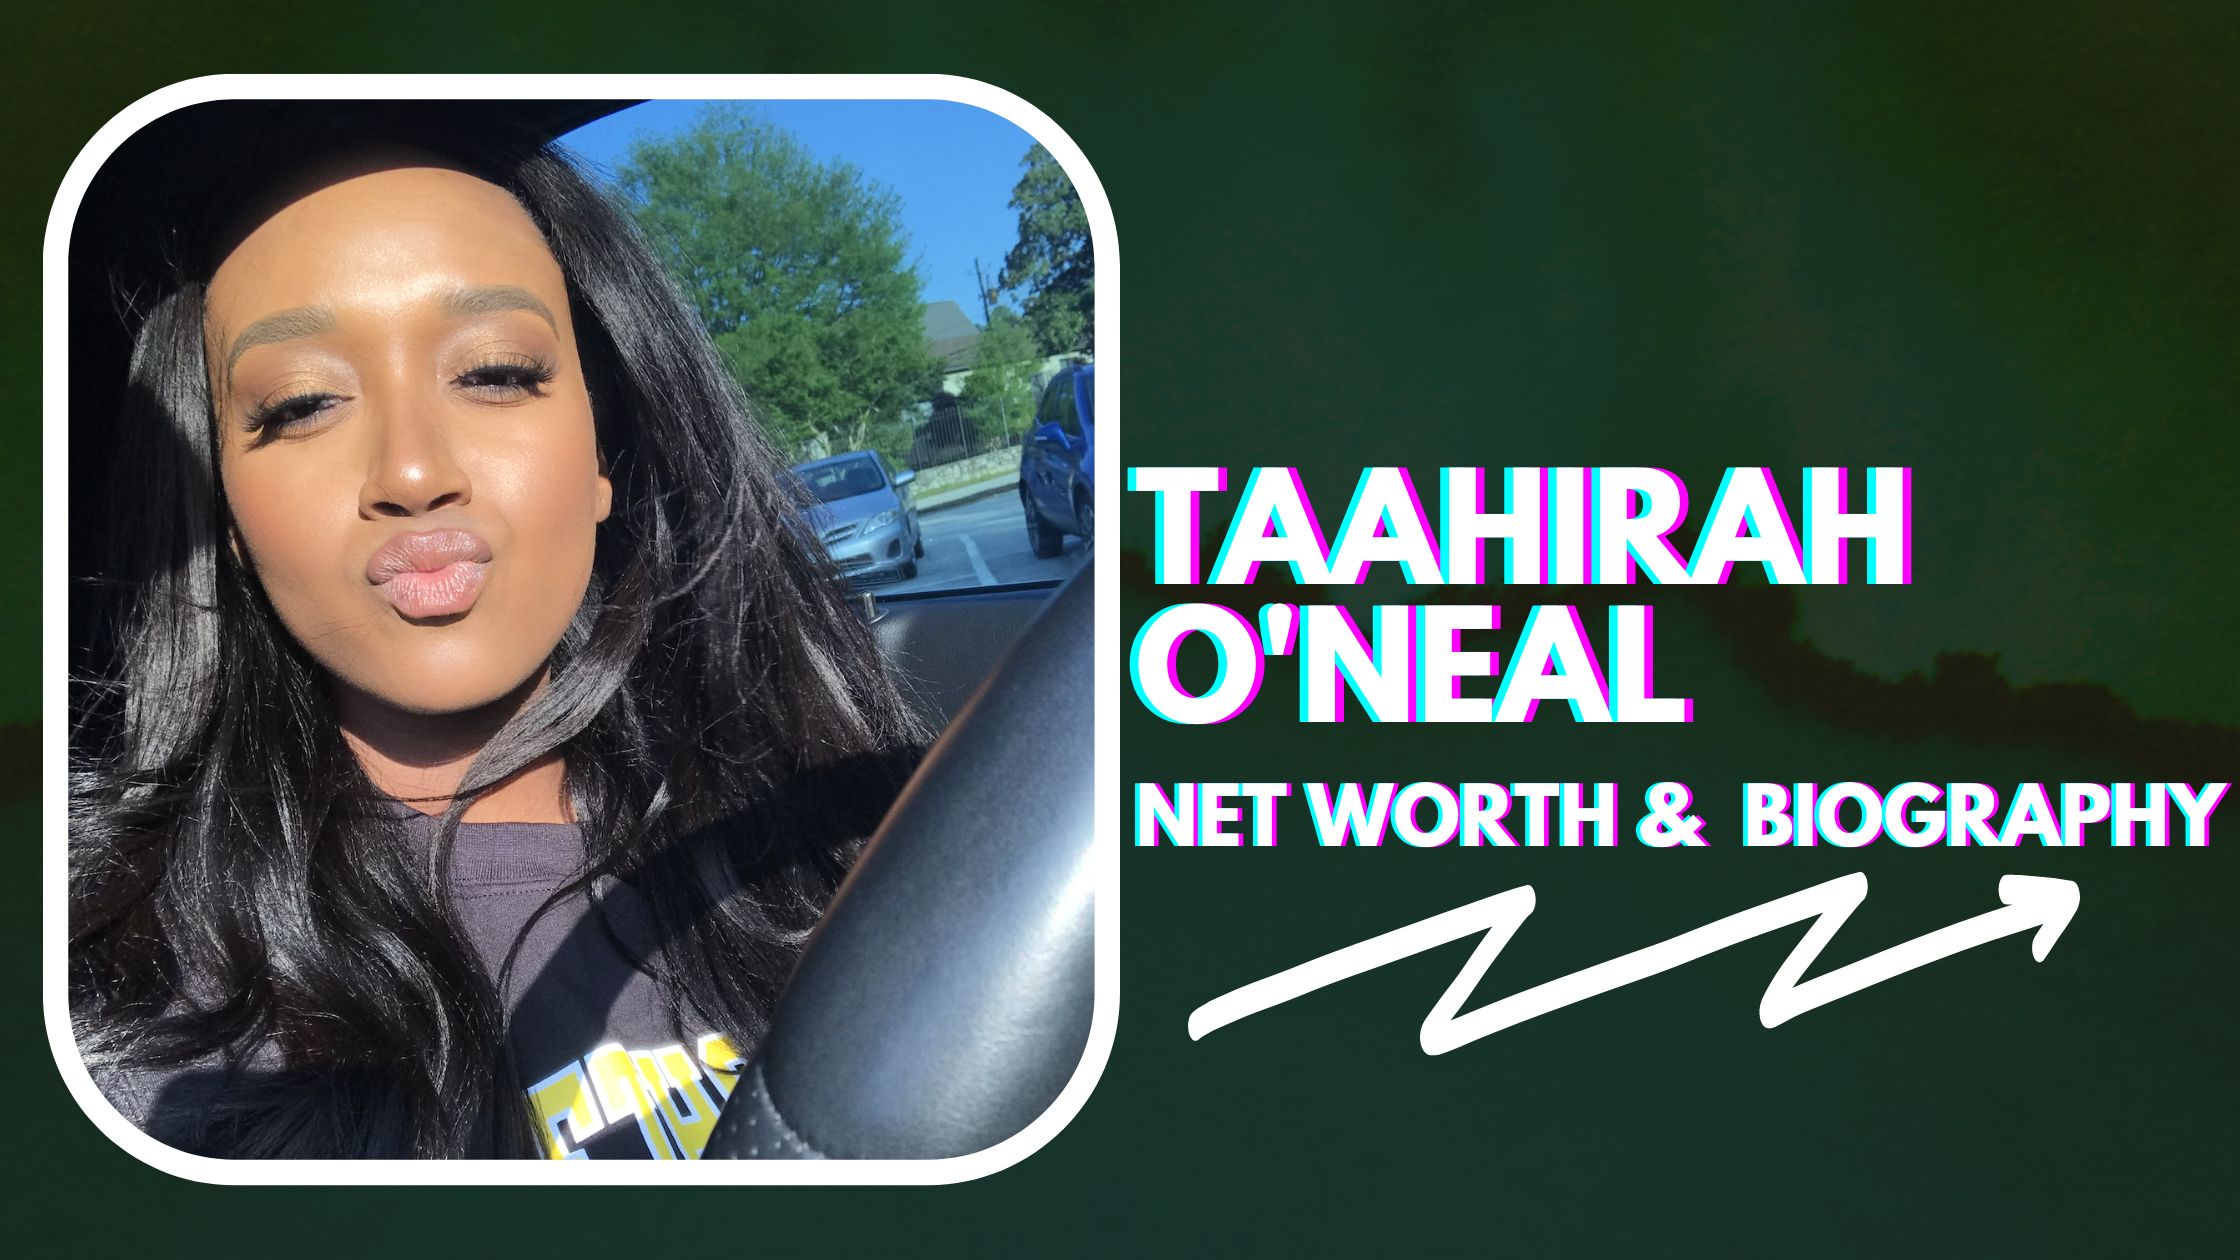 Taahirah O'Neal